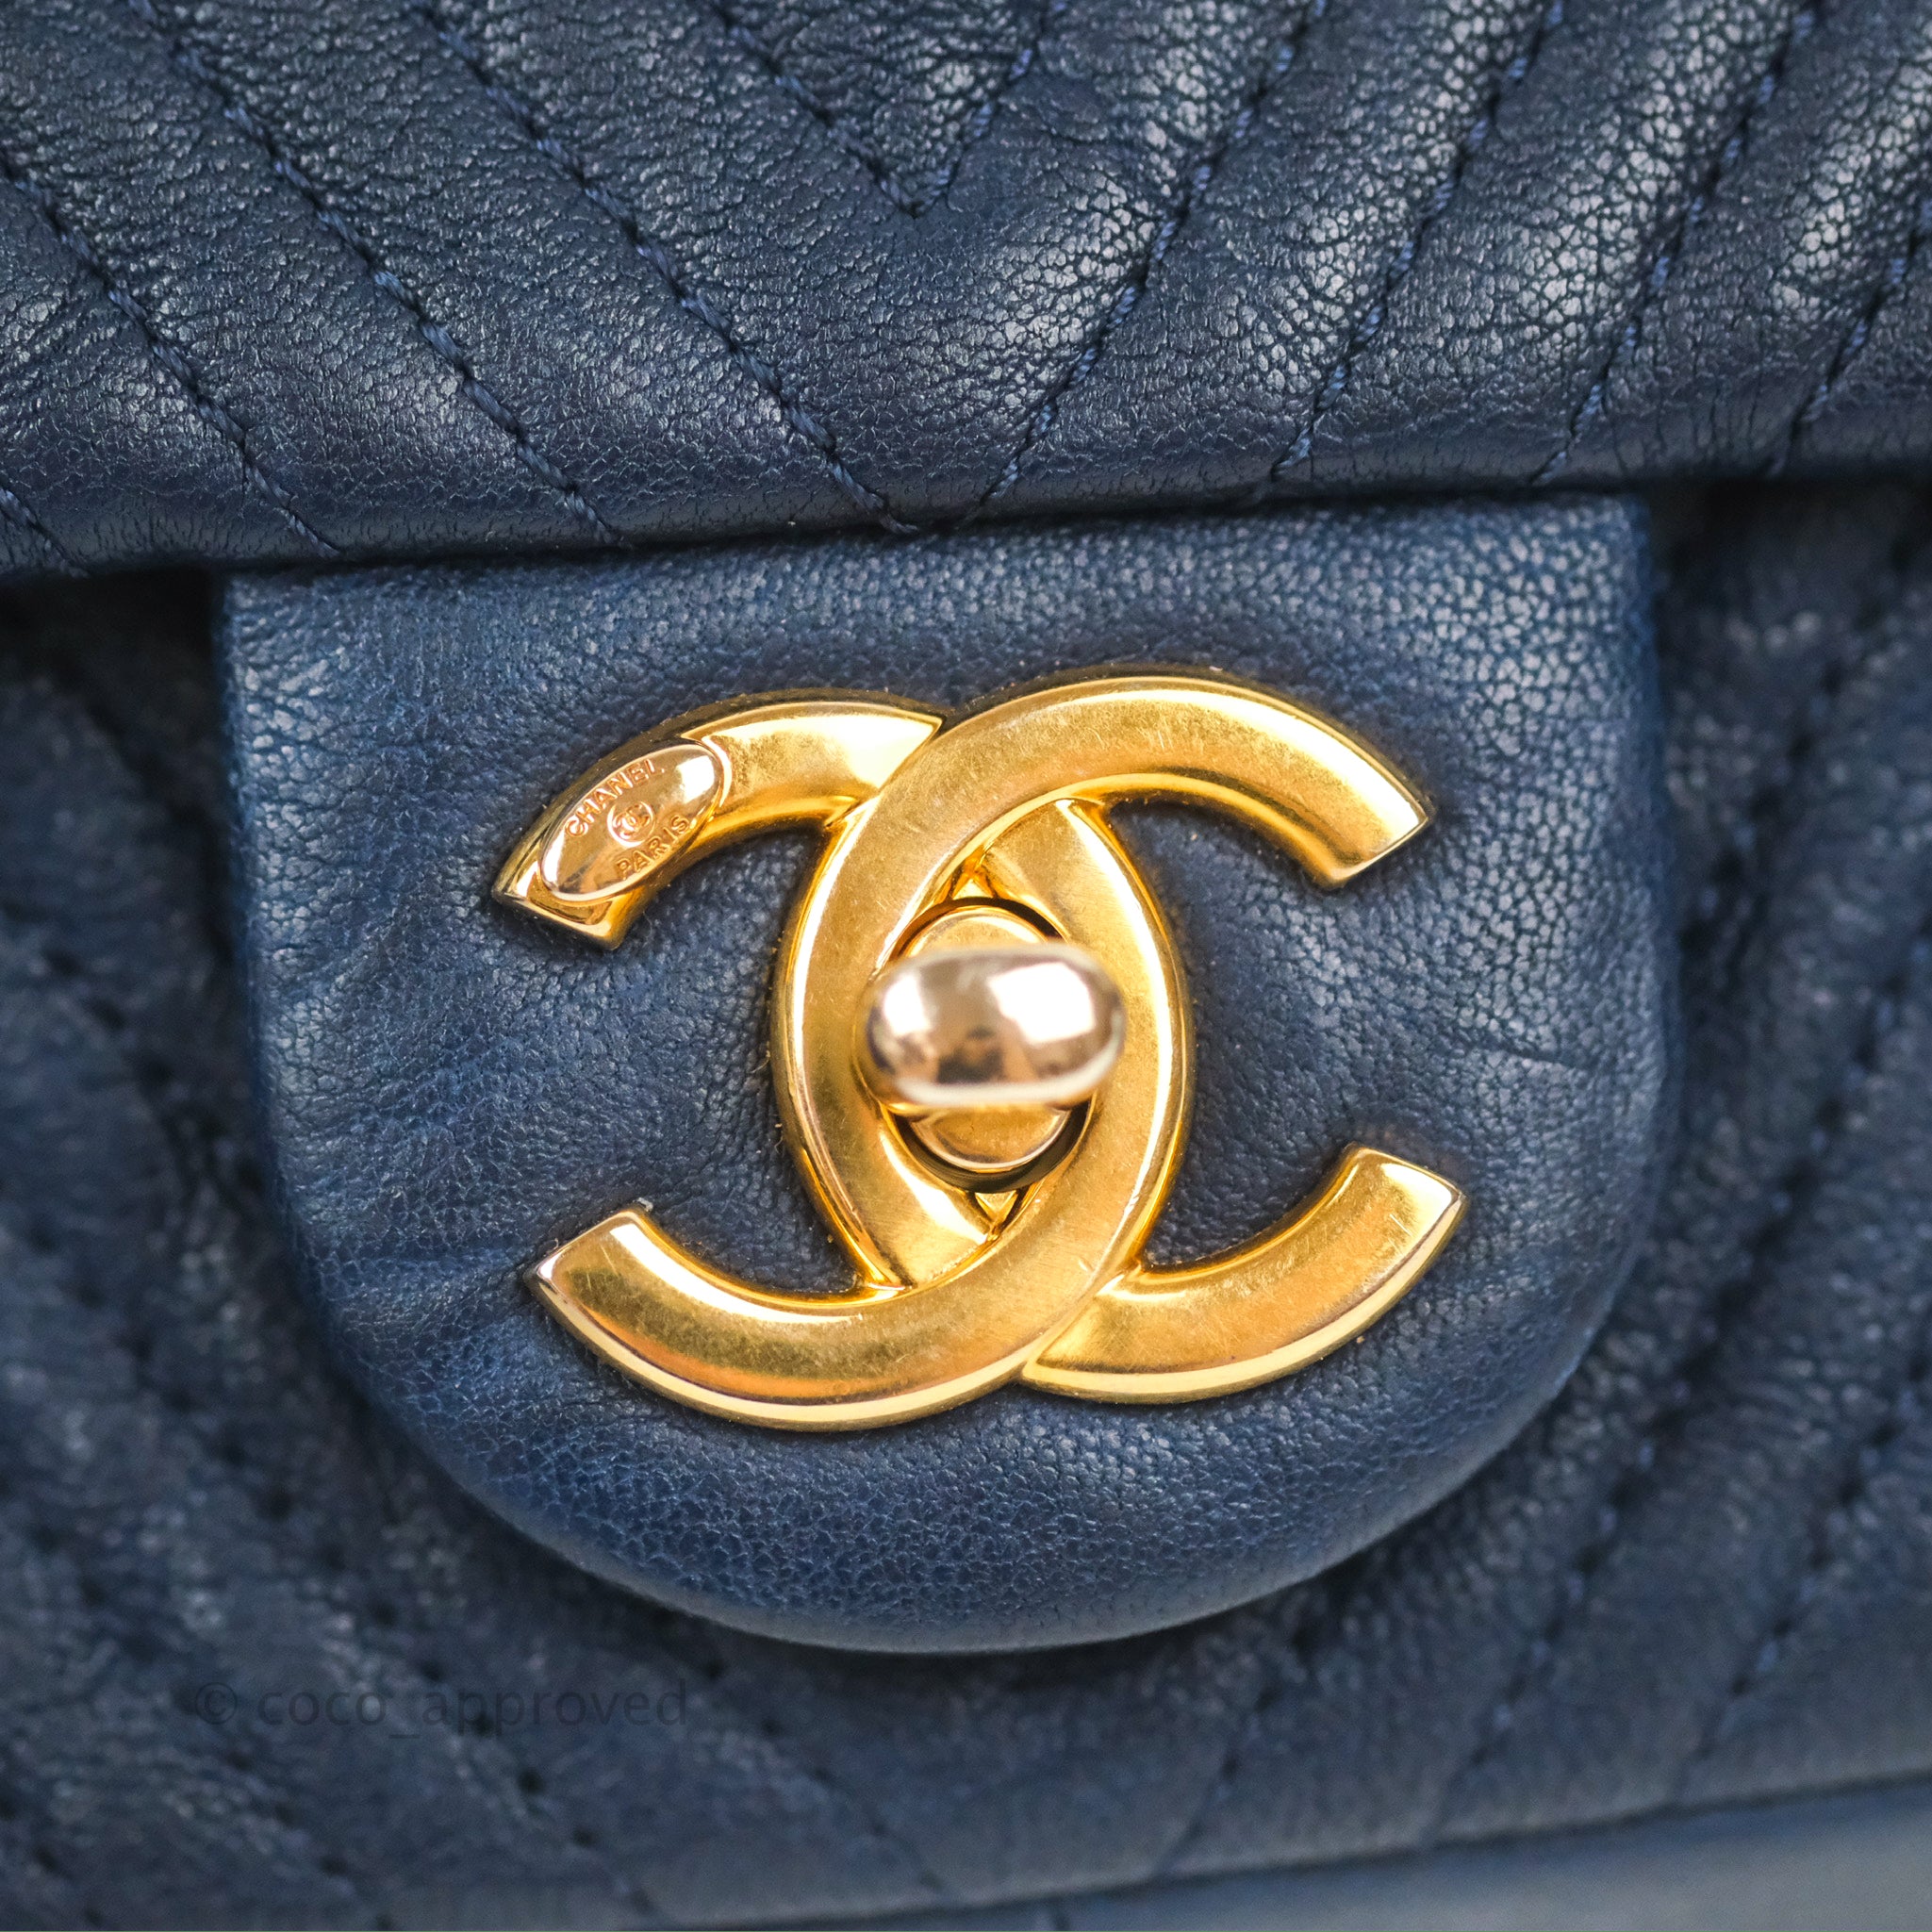 Chanel calfskin chevron stitched - Gem